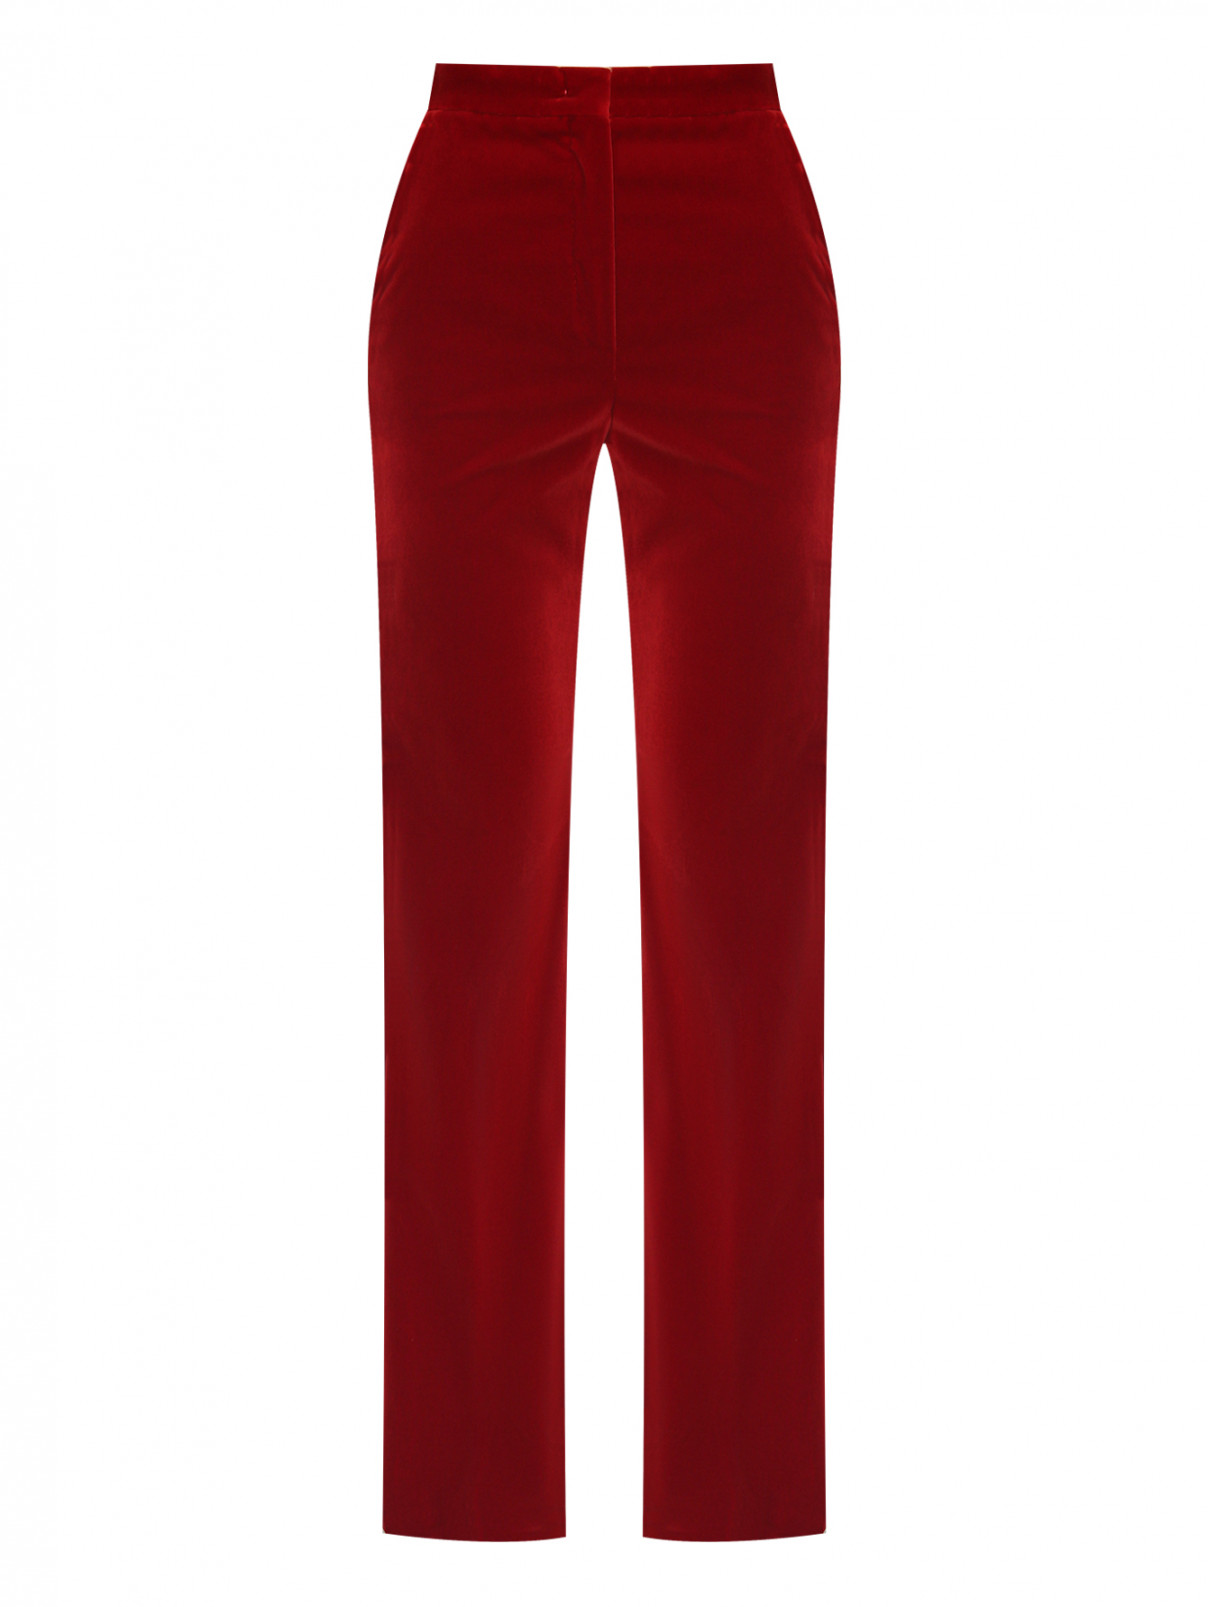 Бархатные брюки с карманами Max Mara  –  Общий вид  – Цвет:  Красный